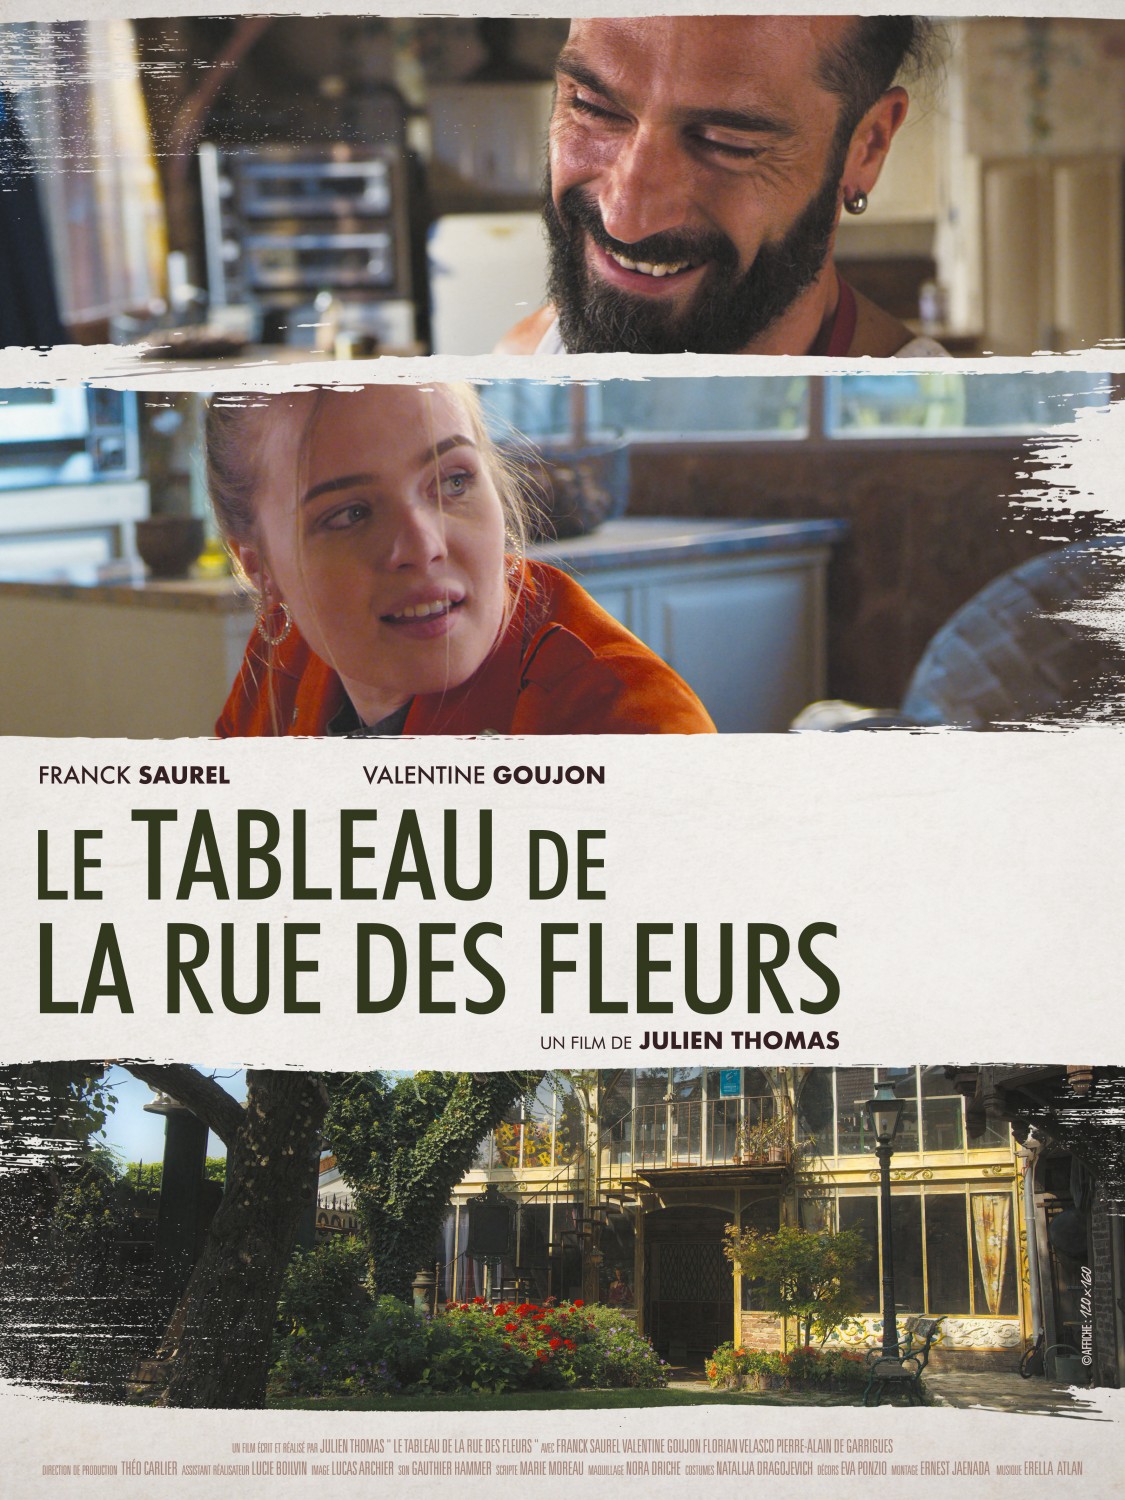 Extra Large Movie Poster Image for Le tableau de la rue des fleurs